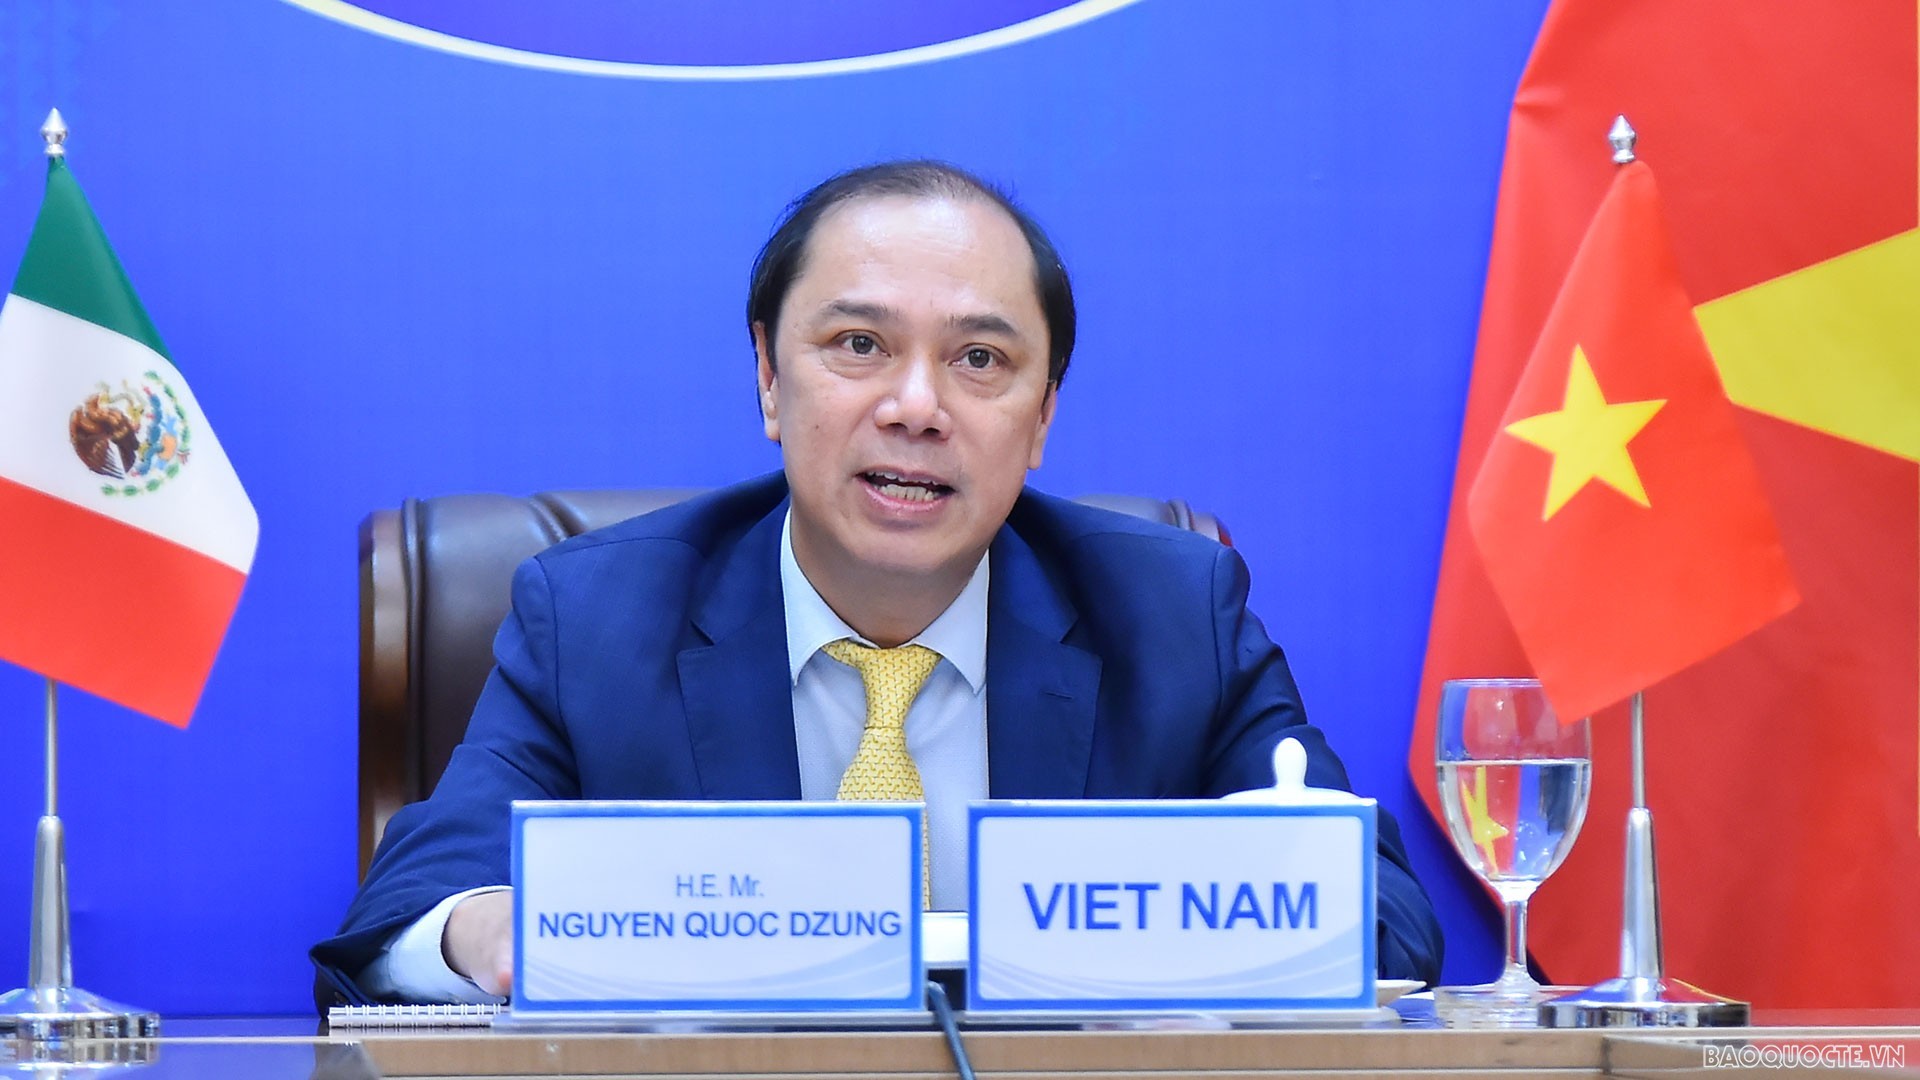 Việt Nam-Mexico nhất trí thúc đẩy đàm phán một số hiệp định, thỏa thuận